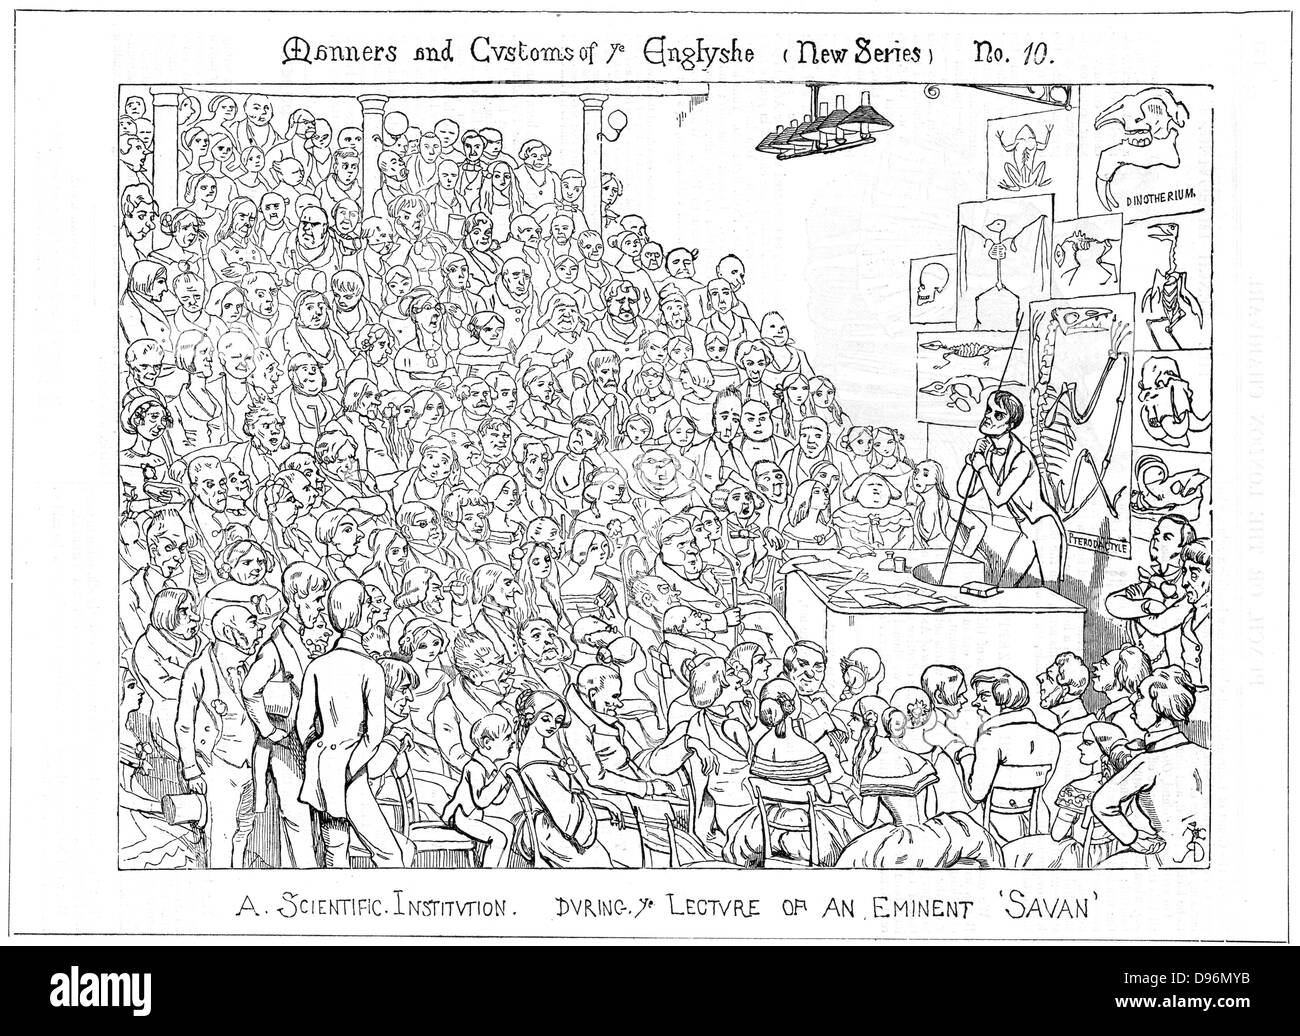 Richard Owen (1804-1892) naturalista britannico e anatomista, dando un venerdì sera il discorso sui fossili alla Royal Institution di Londra. Cartone animato da Richard Doyle di 'Foratura', Londra 1849. Incisione su legno. Foto Stock